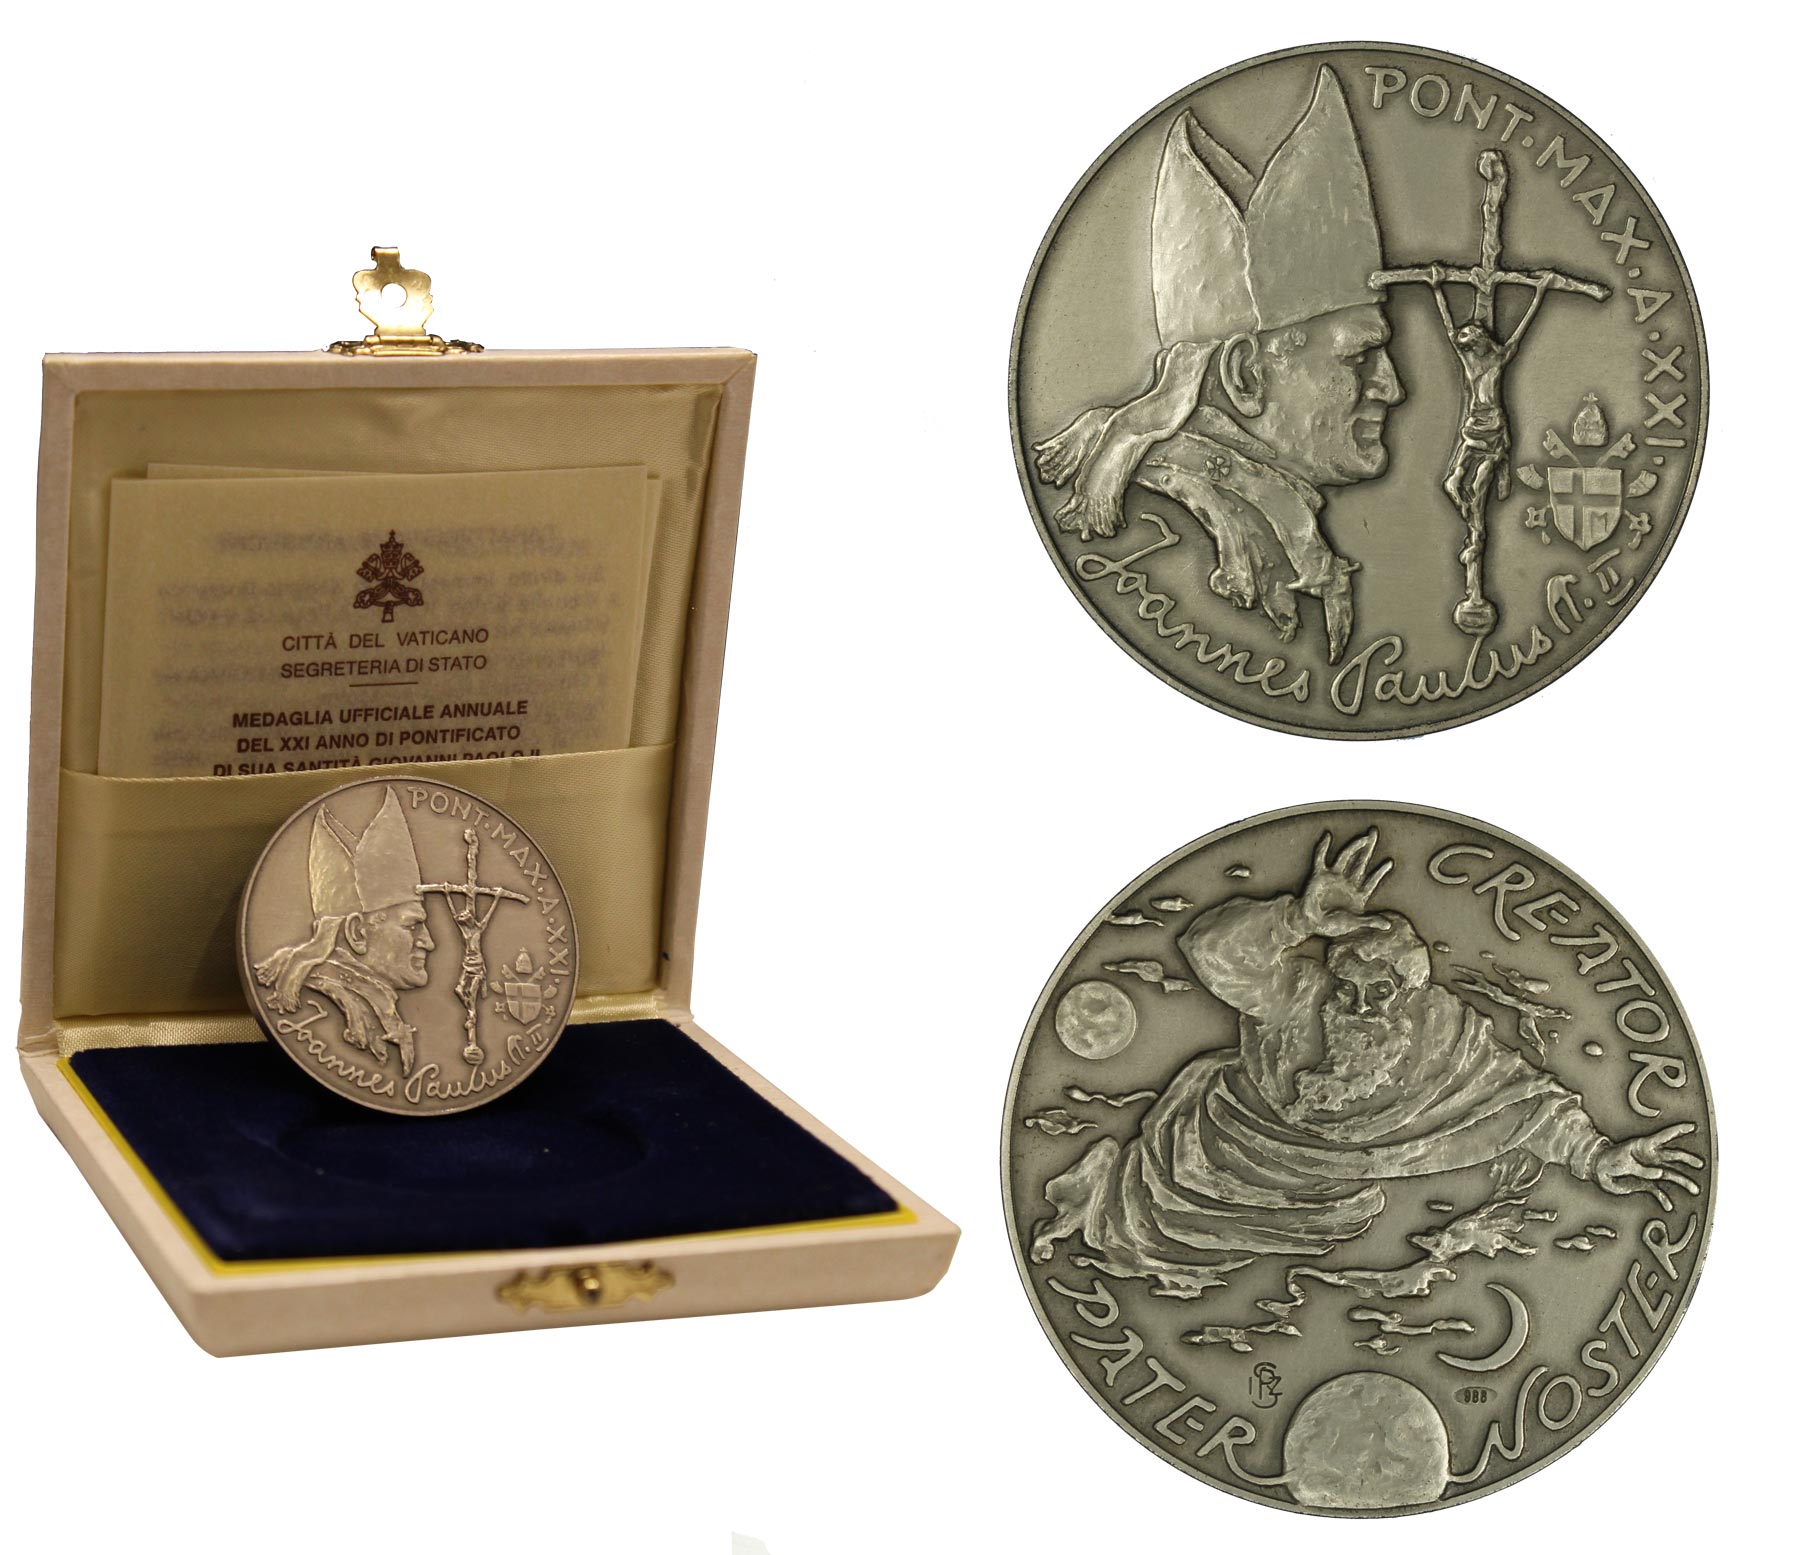 Medaglia ufficiale annuale del XXI anno di pontificato di Giovanni Paolo II